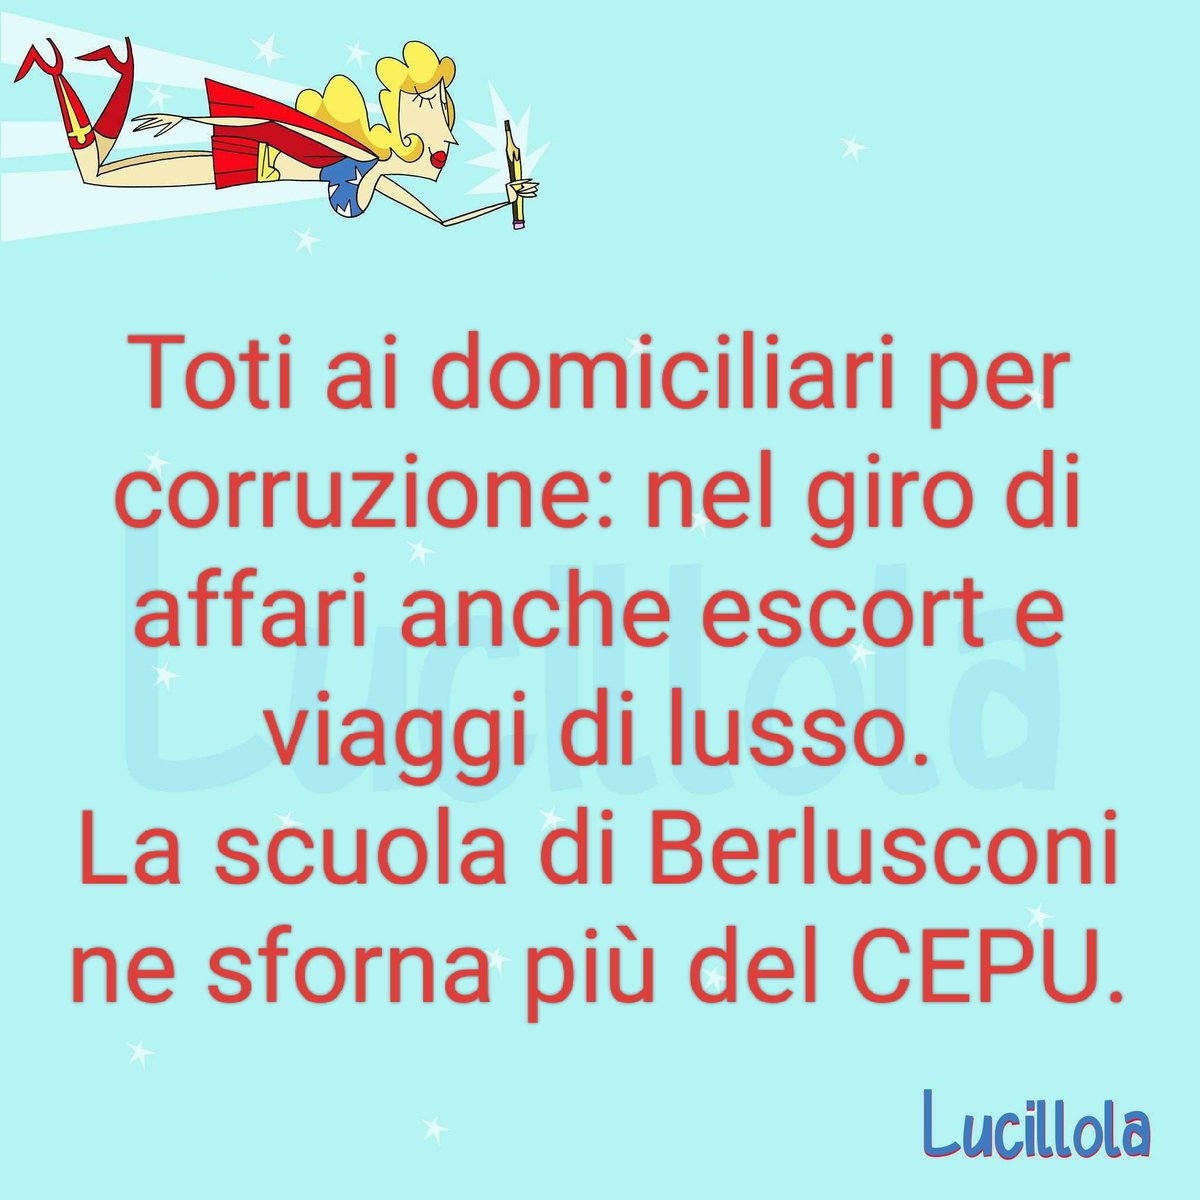 #Toti #Liguria #Berlusconi #esselunga #7maggio #corruzione #GiovanniToti